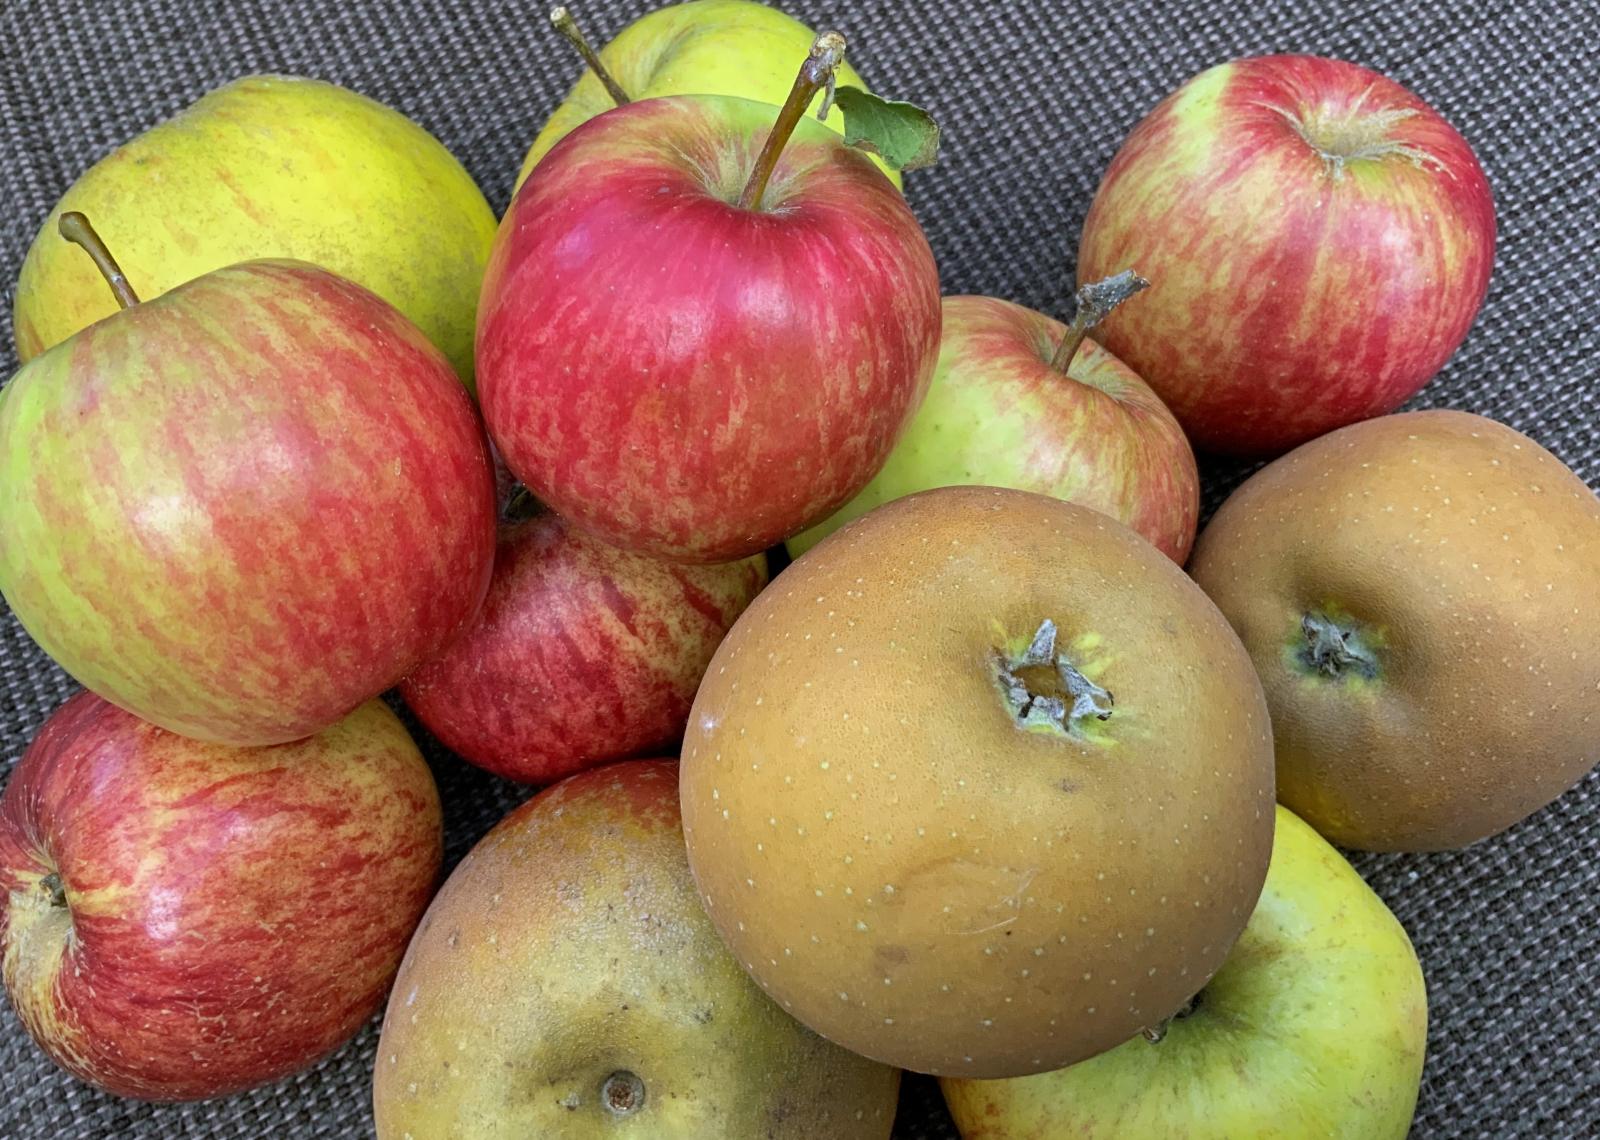 British apples Russet, Pippins